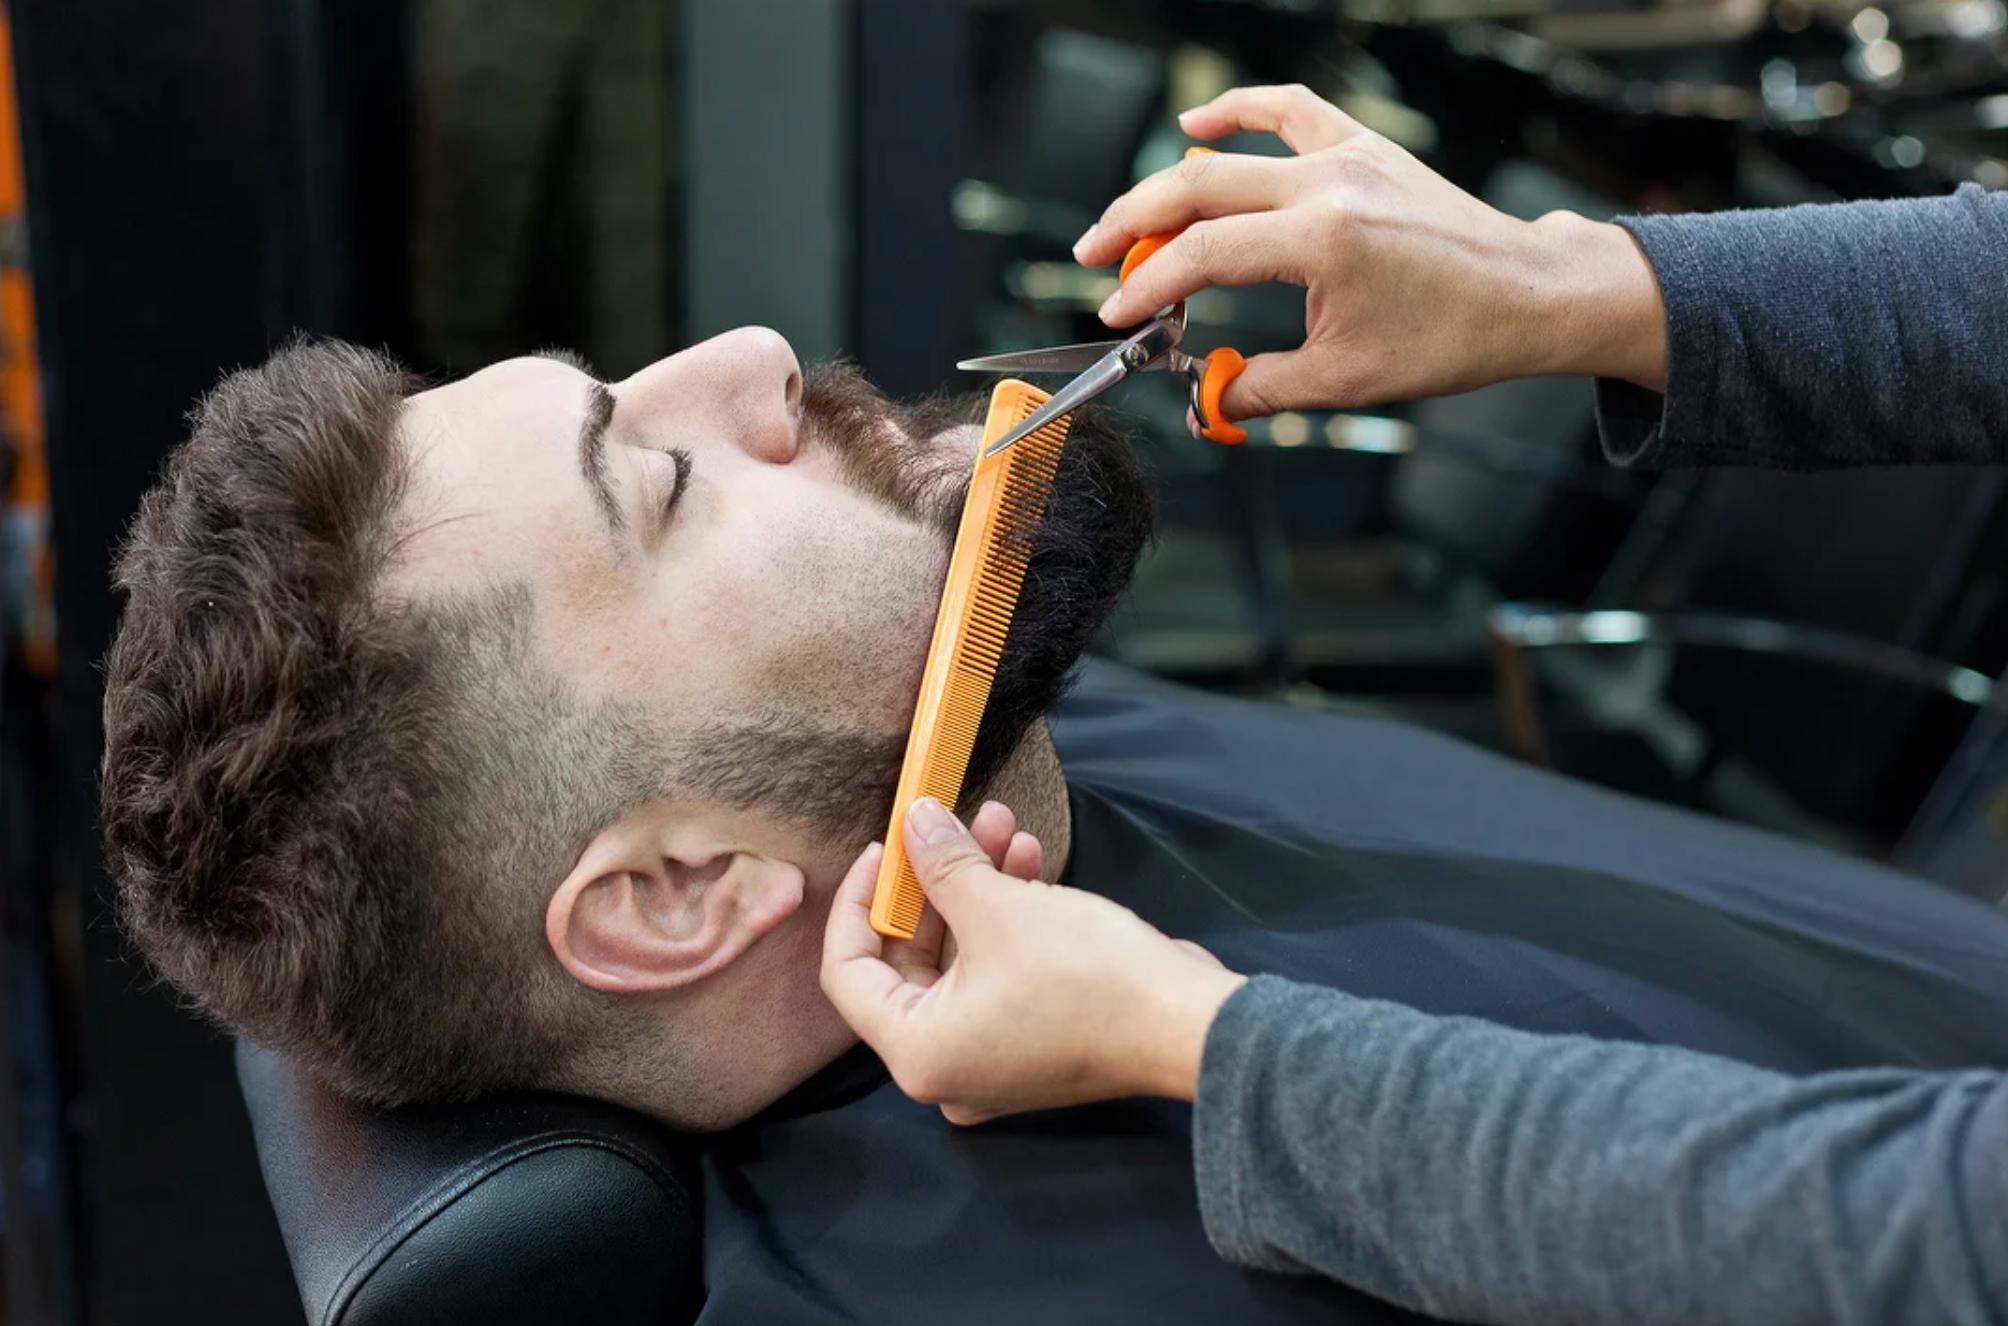 Servicios de barberia: ideas de tratamientos - Treatwell Business